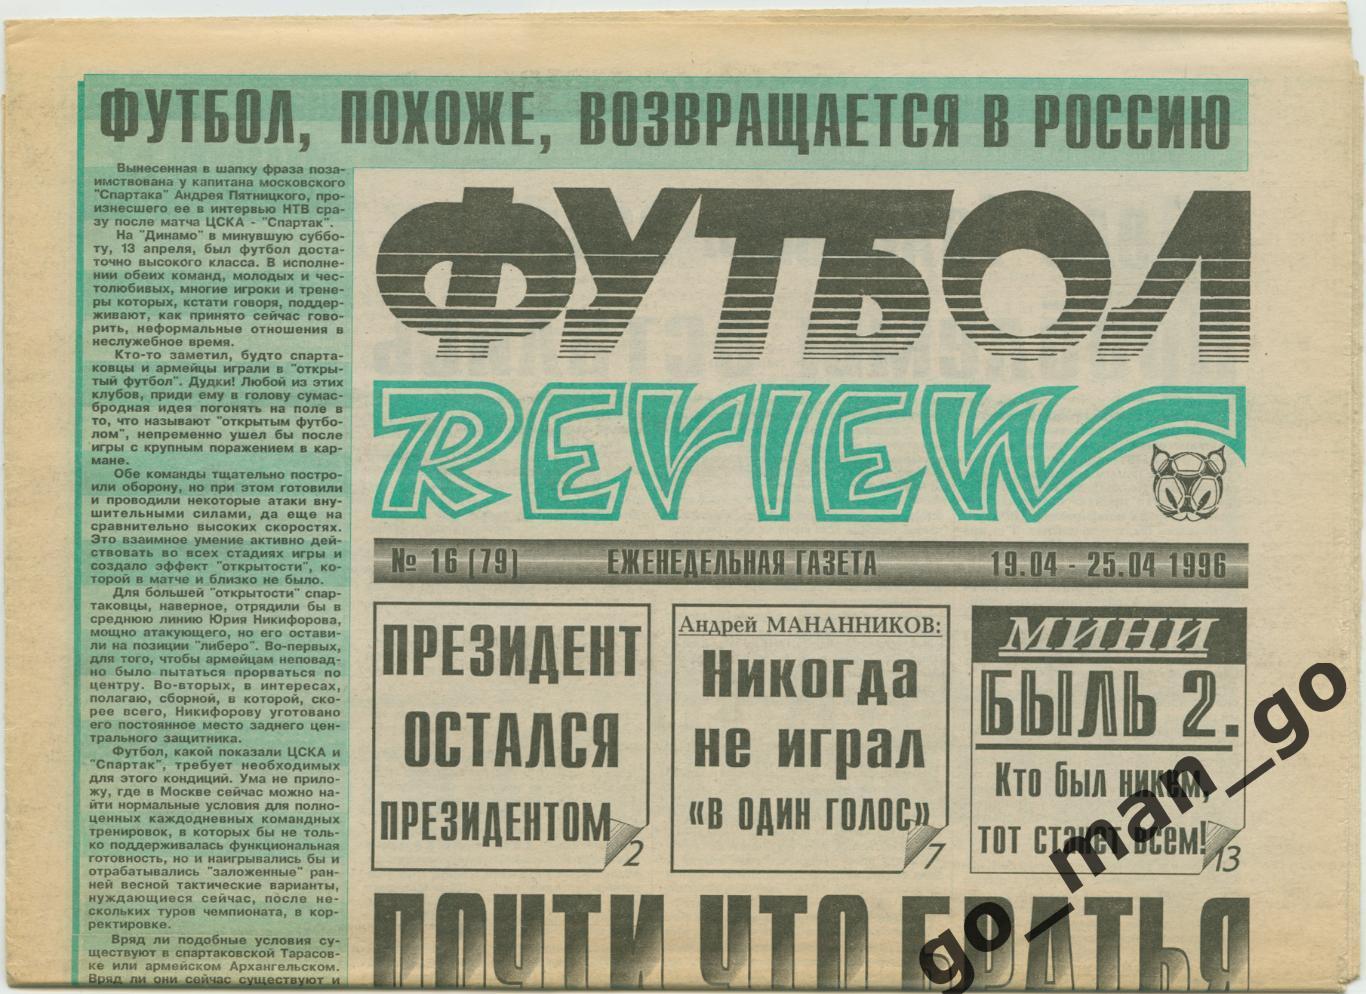 Еженедельник Футбол-Review (Футбол-Ревю), 19-25.04.1996, № 16.